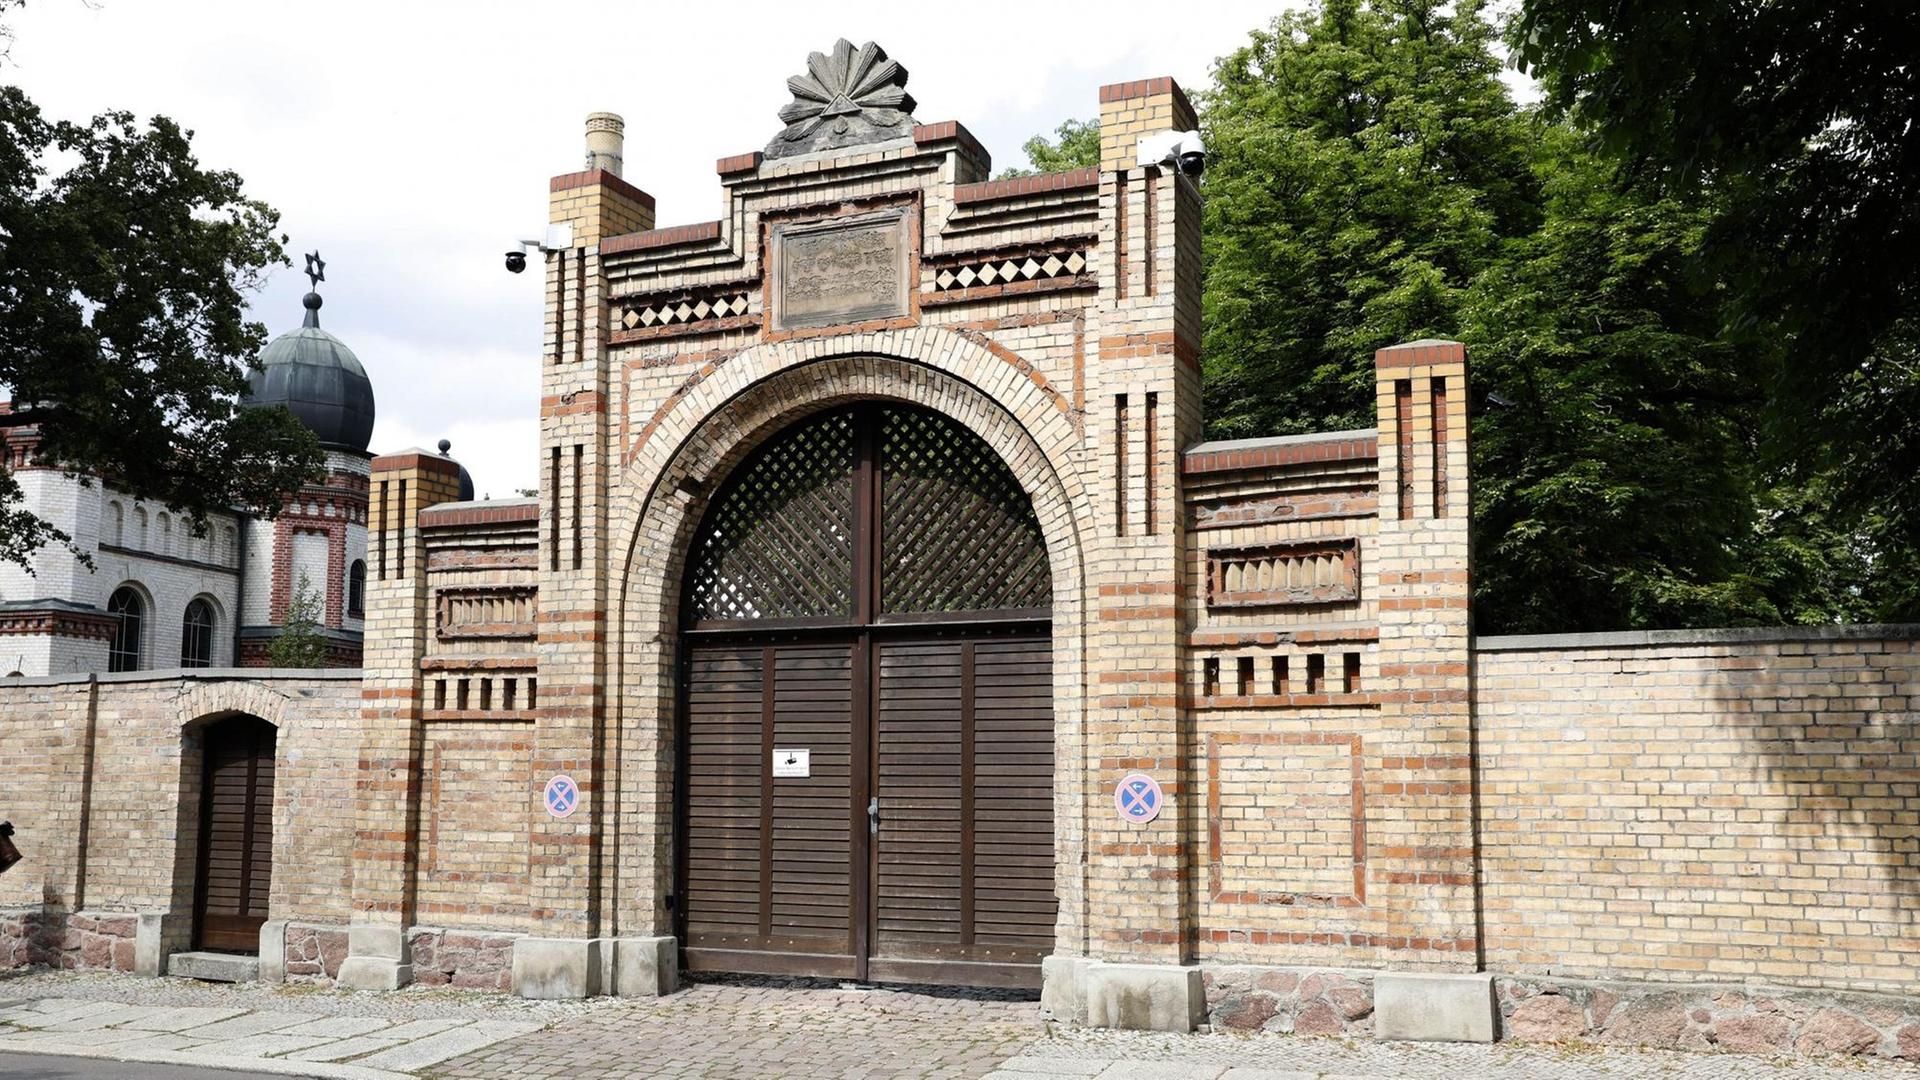 Die Synagoge von Halle an der Saale, die am 9. Oktober 2019 Ziel eines antisemitischen Anschlags wurde.